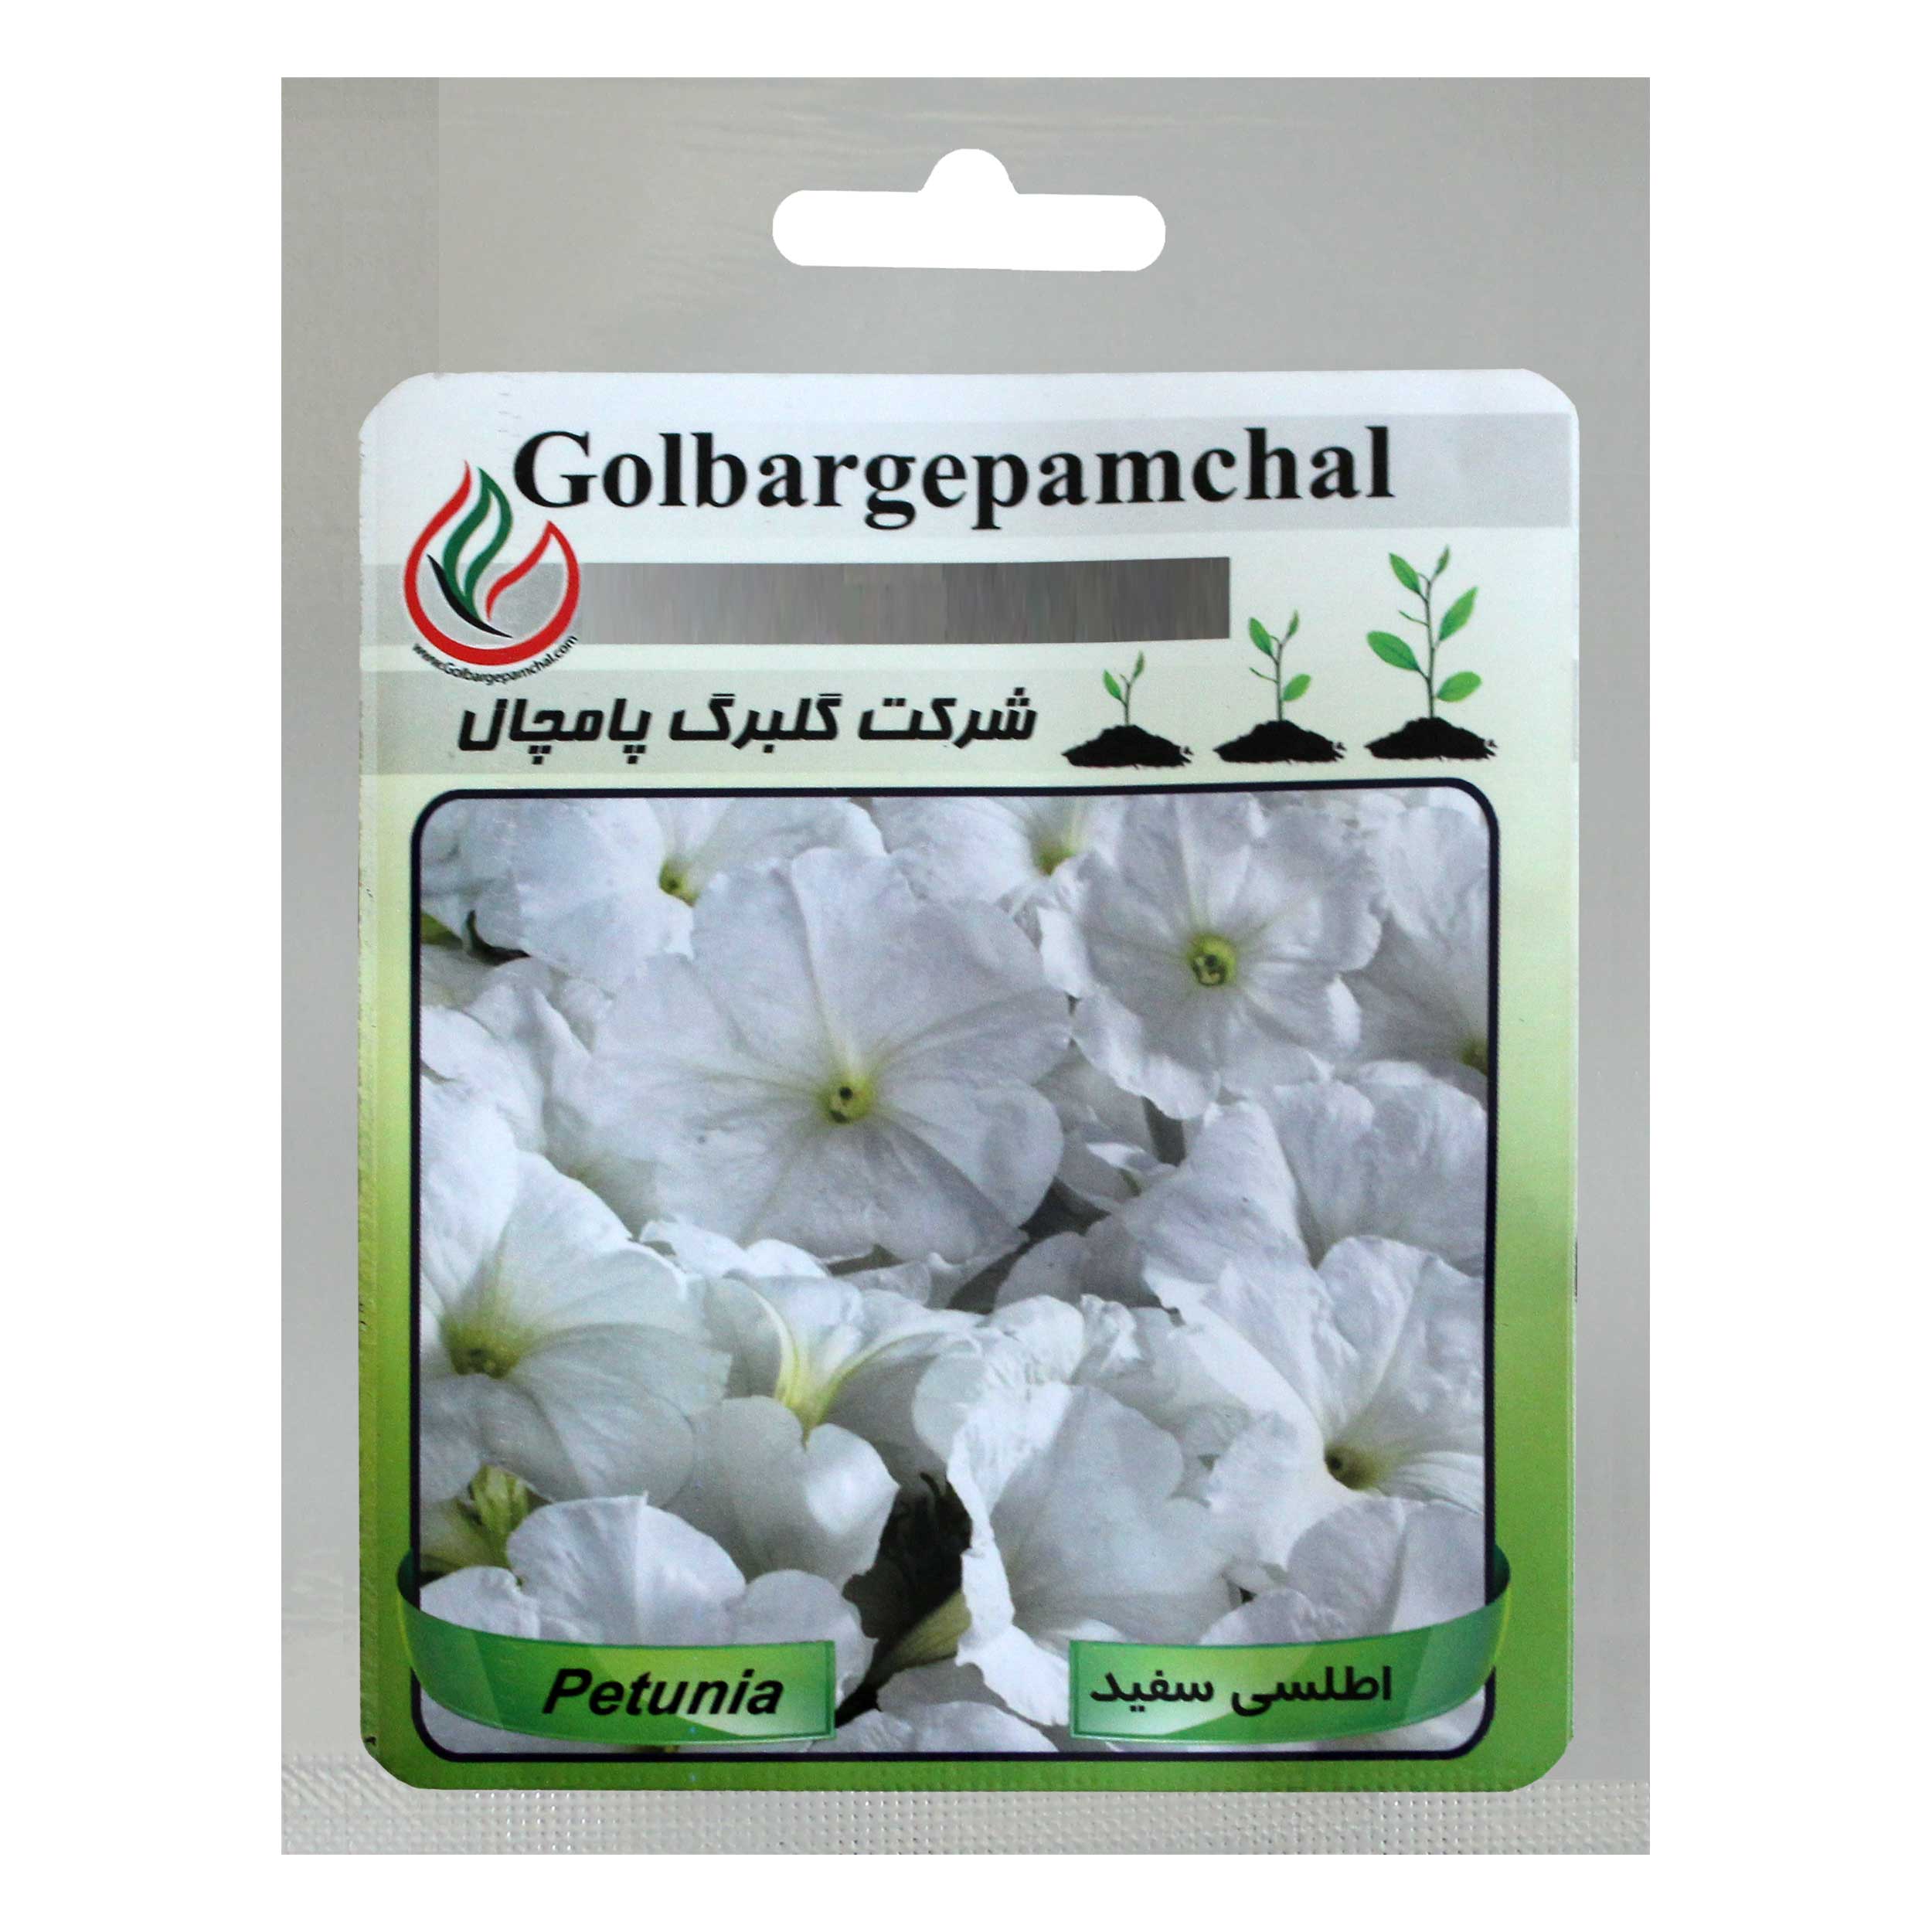 بذر گل اطلسی گل درشت سفید گلبرگ پامچال کد GPF-021